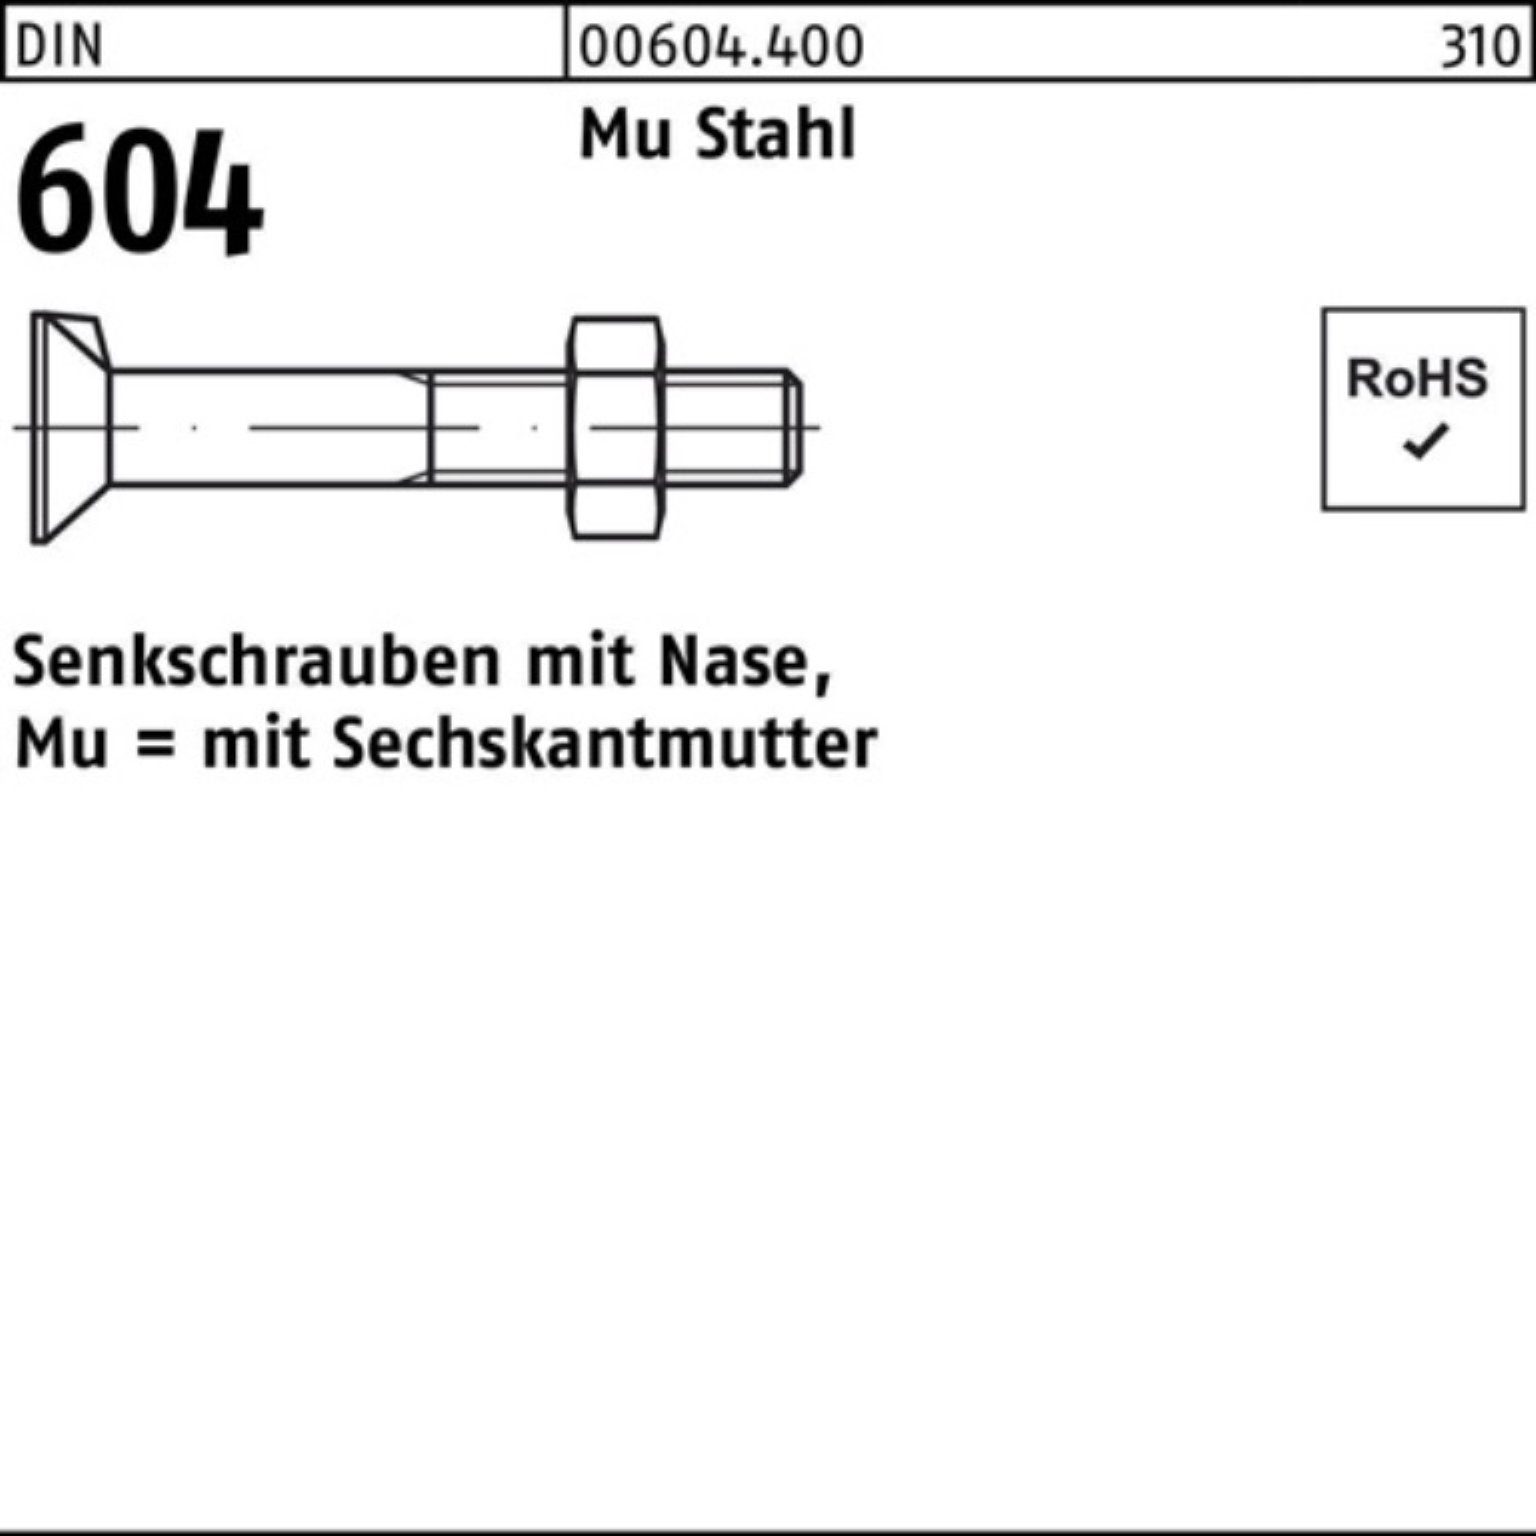 Reyher Senkschraube 100er Pack Senkschraube DIN 604 Nase/6-ktmutter M16x 55 Mu Stahl 4.6 5